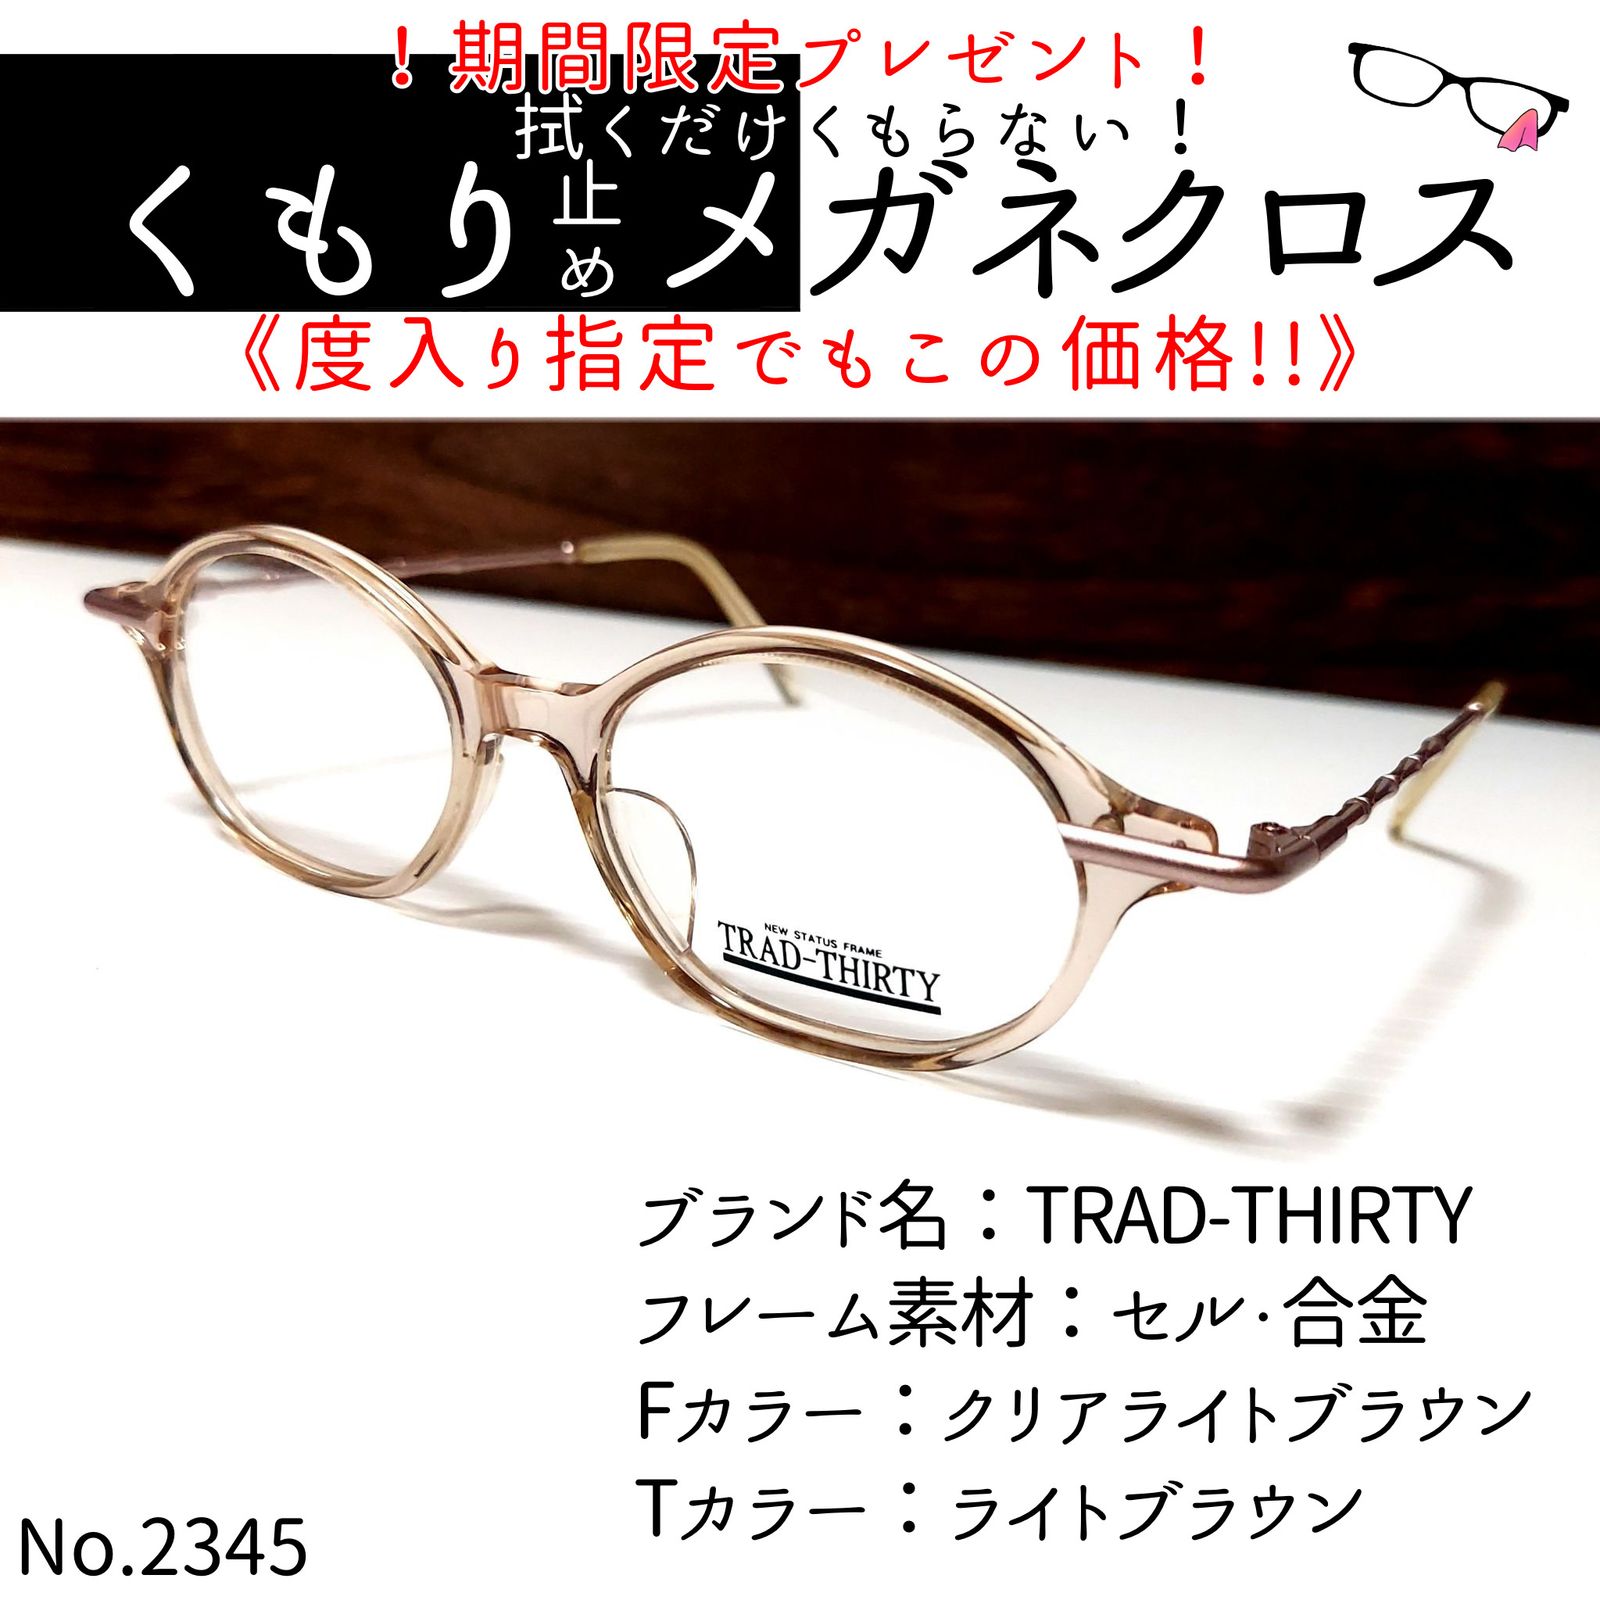 No.2345メガネ TRAD-THIRTY【度数入り込み価格】-